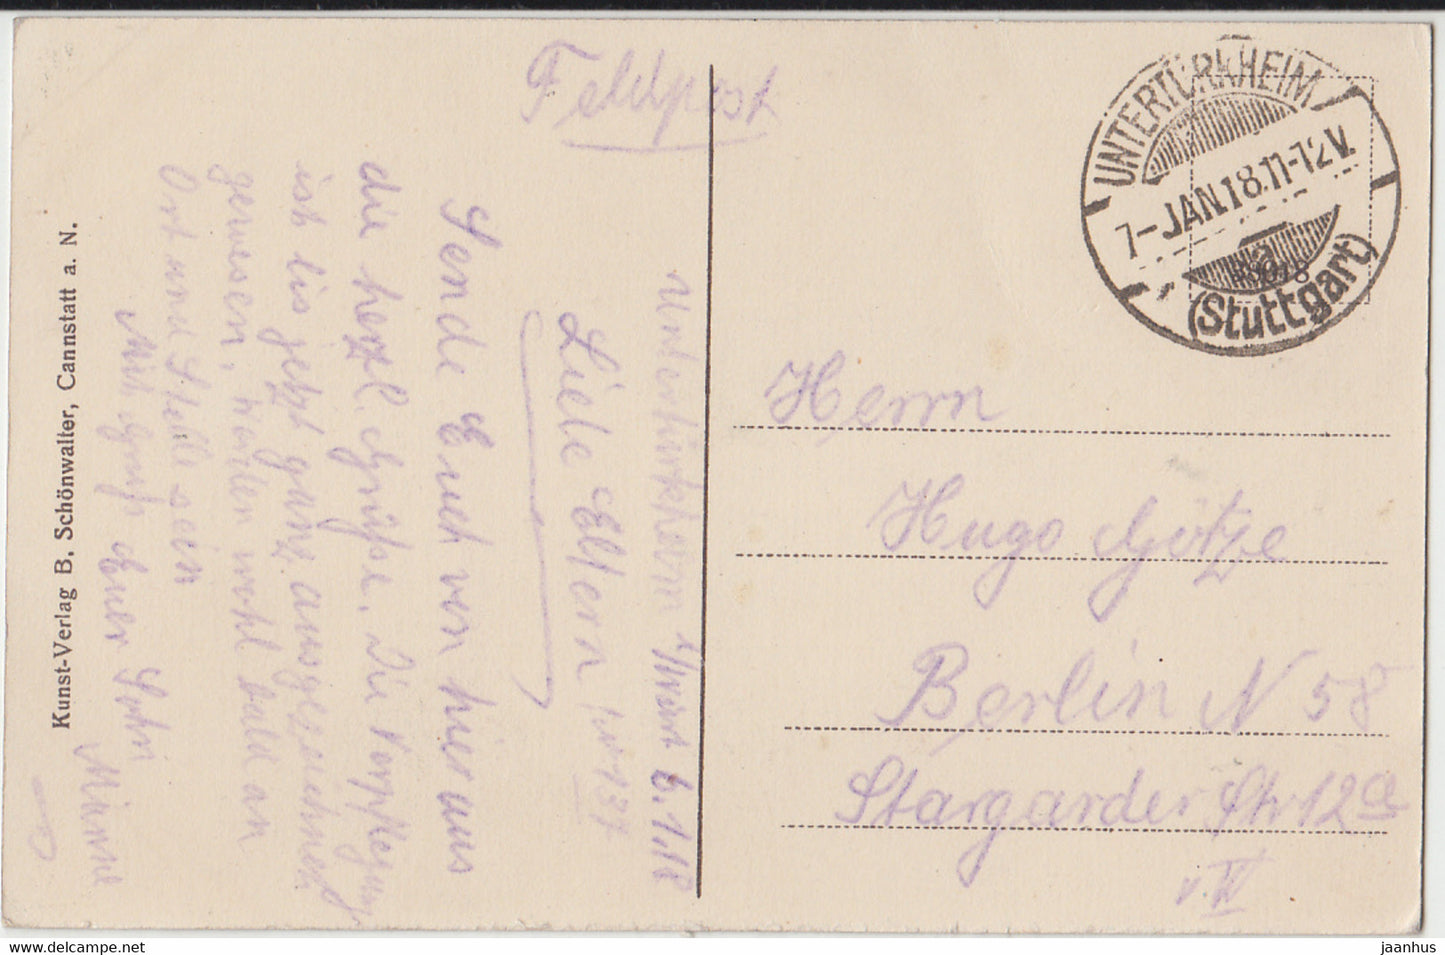 Unterturkheim - Feldpost - old postcard - 1918 - Germany - used